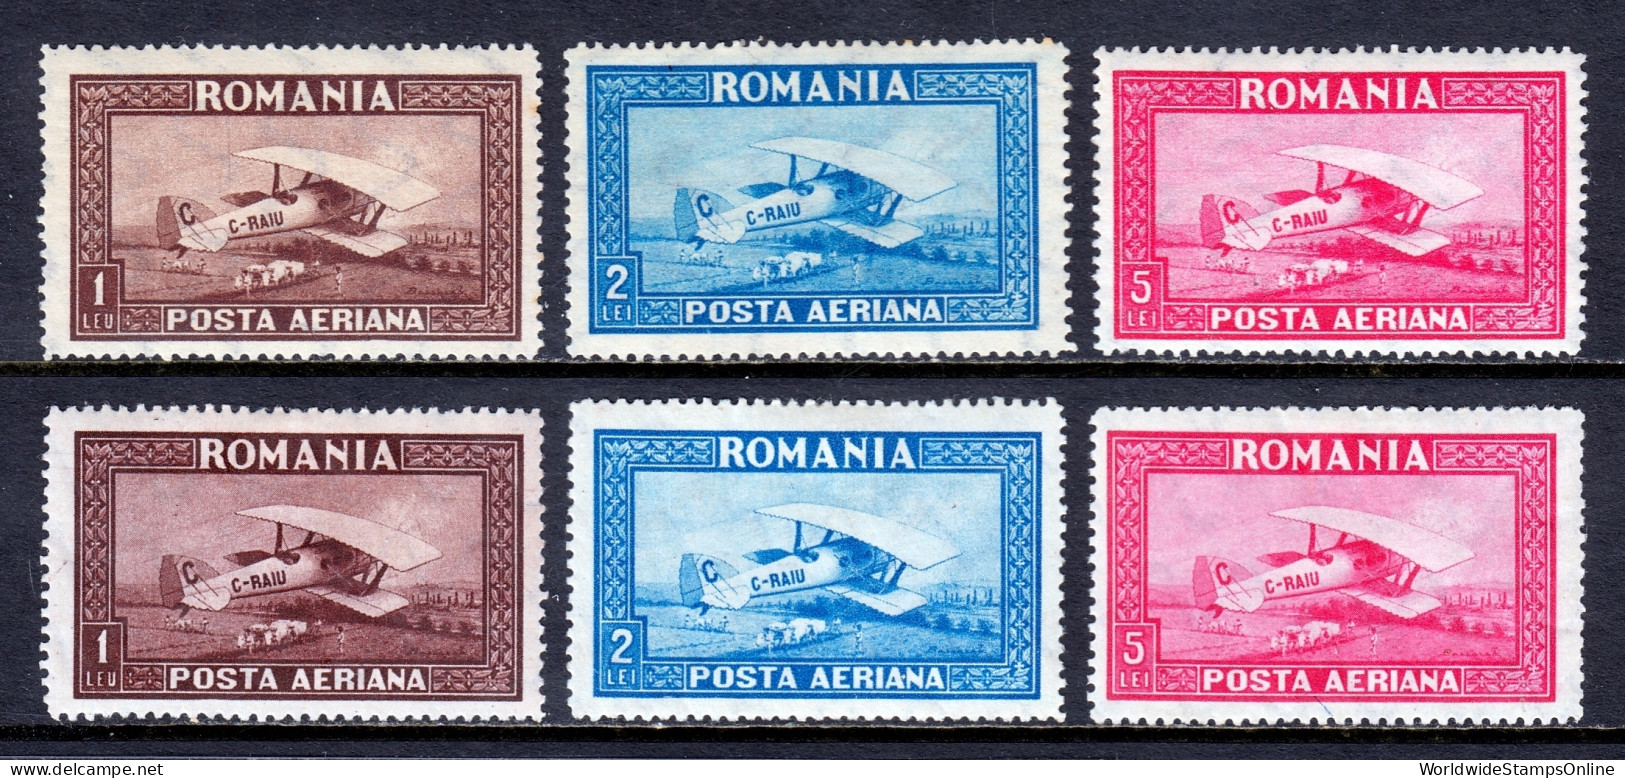 Romania - Scott #C1-C6 - MH - Patchy Gum #C4-C6 - SCV $21 - Unused Stamps